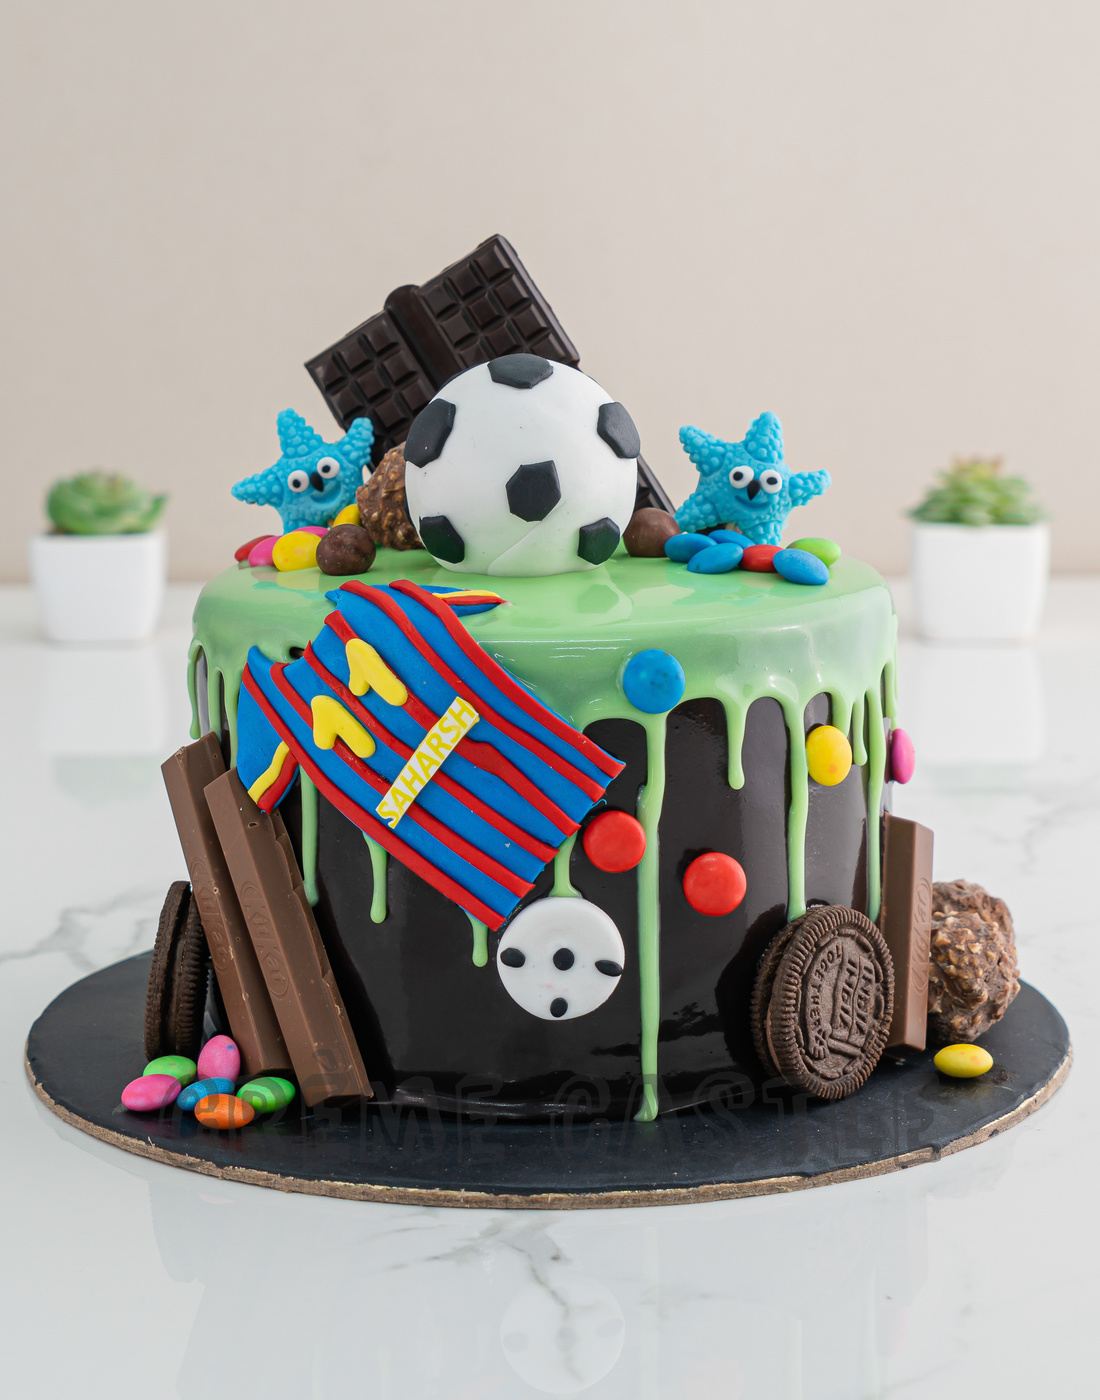 Football Cake Recipe | Fondant Football Cake Design idea 2023 - YouTube